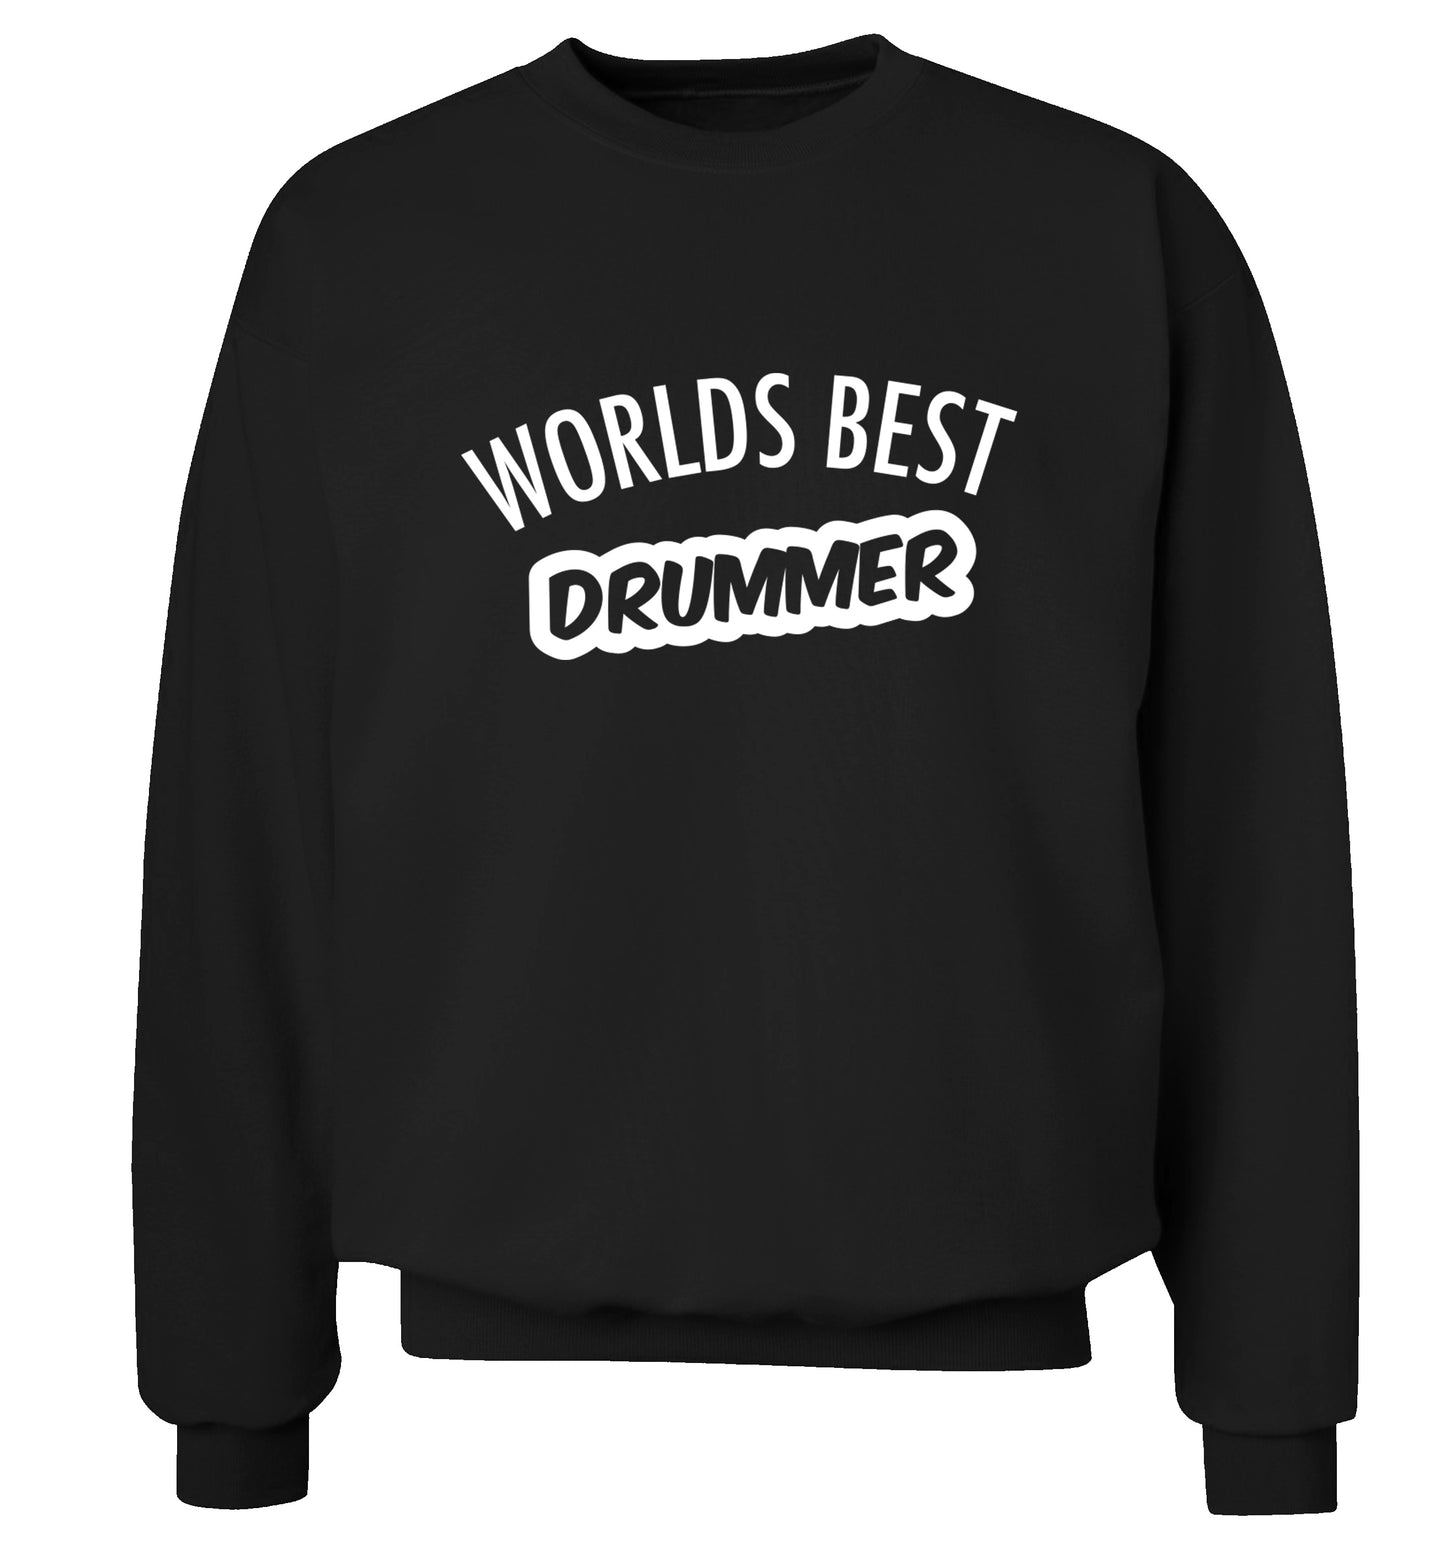 Worlds best drummer Adult's unisex black Sweater 2XL